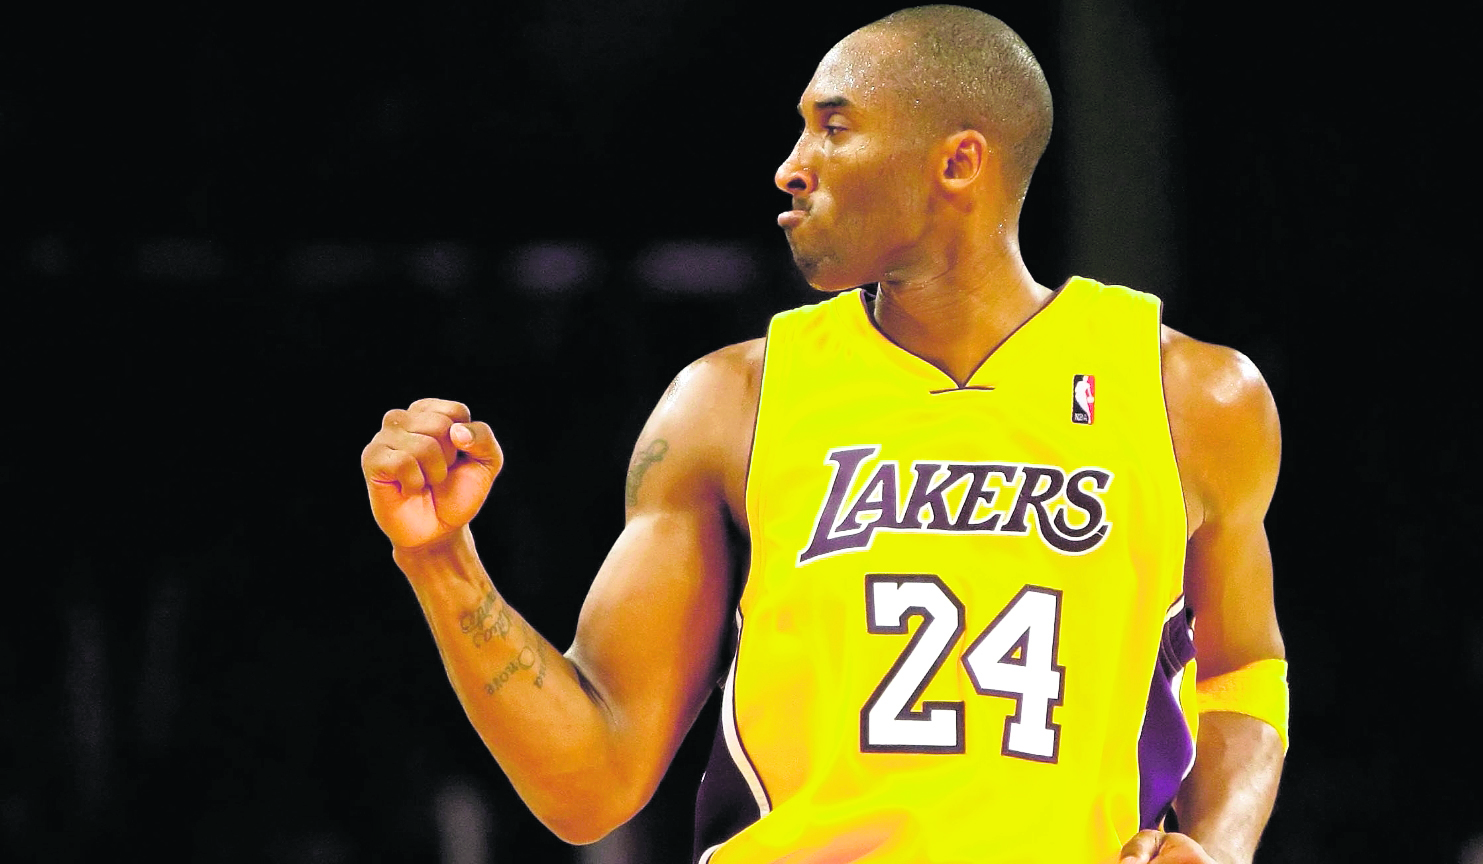 Kobe Bryant ha recibido homenajes en casi todos los deportes, después de su fallecimiento. (Foto Prensa Libre: Hemeroteca PL)